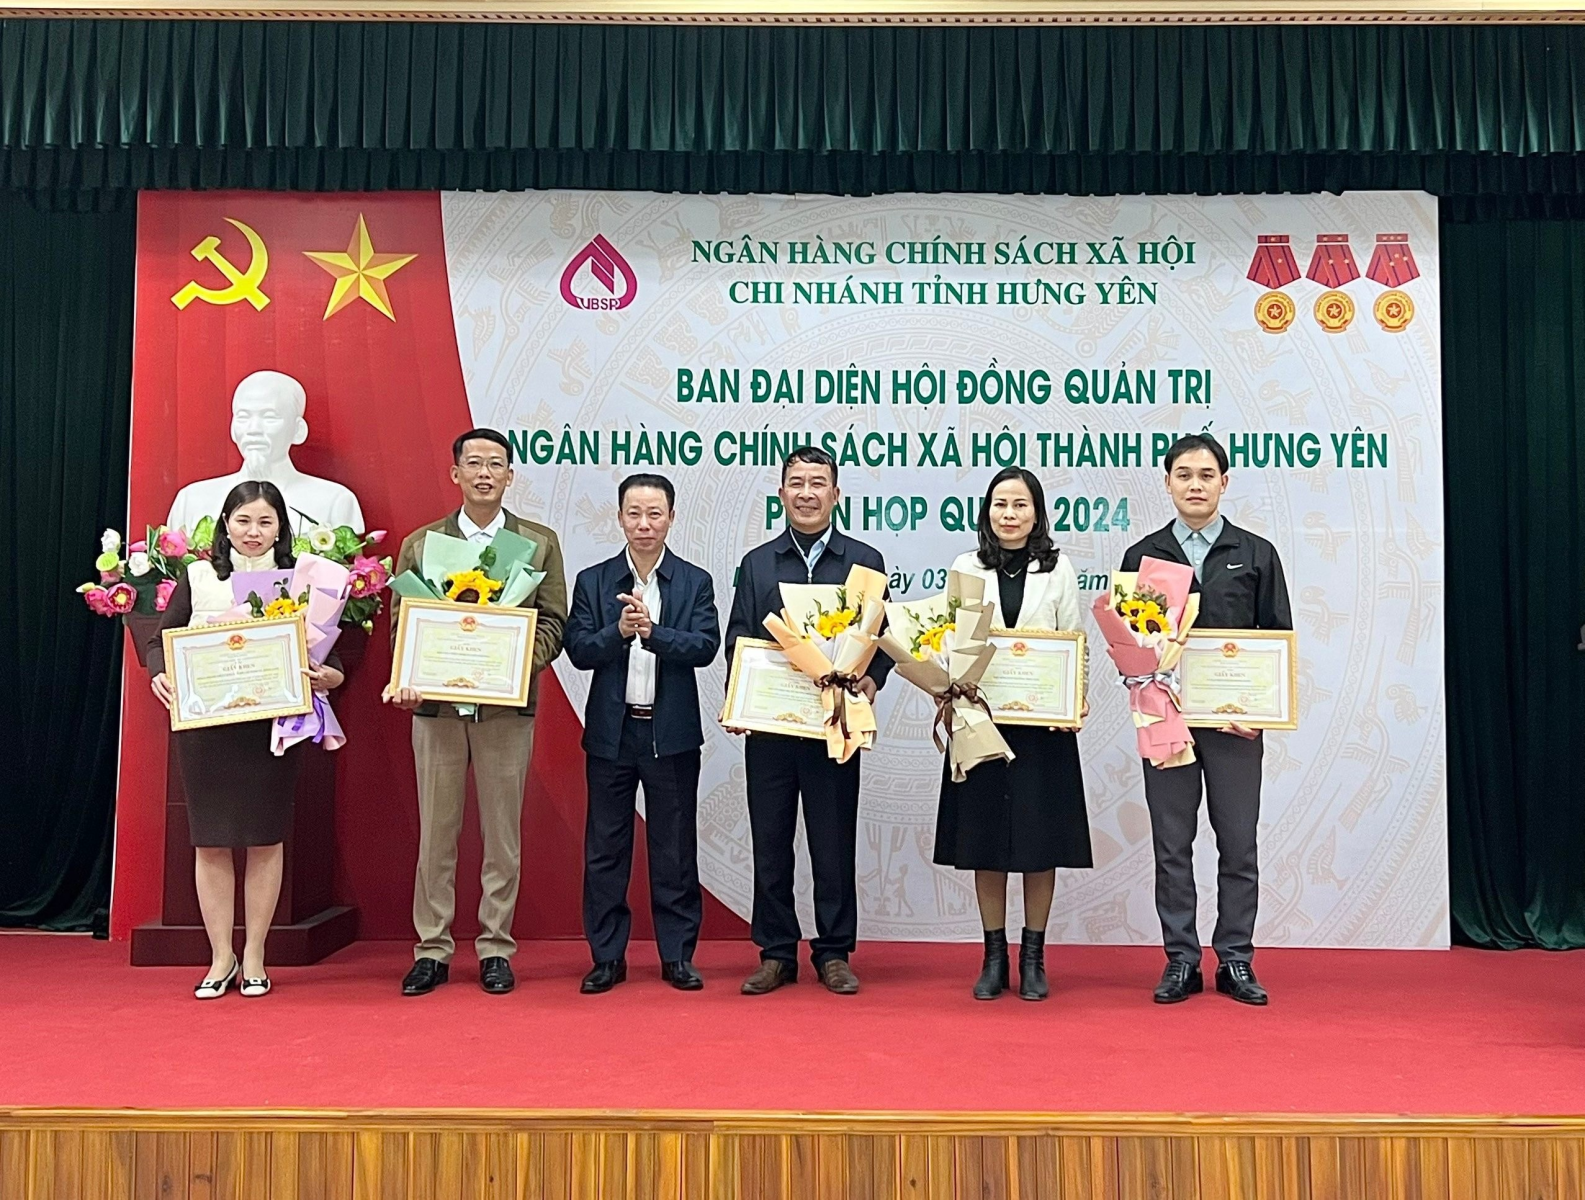 Ban đại diện Hội đồng quản trị Ngân hàng Chính sách xã hội (NHCSXH) thành phố Hưng Yên triển khai nhiệm vụ quý I năm 2024